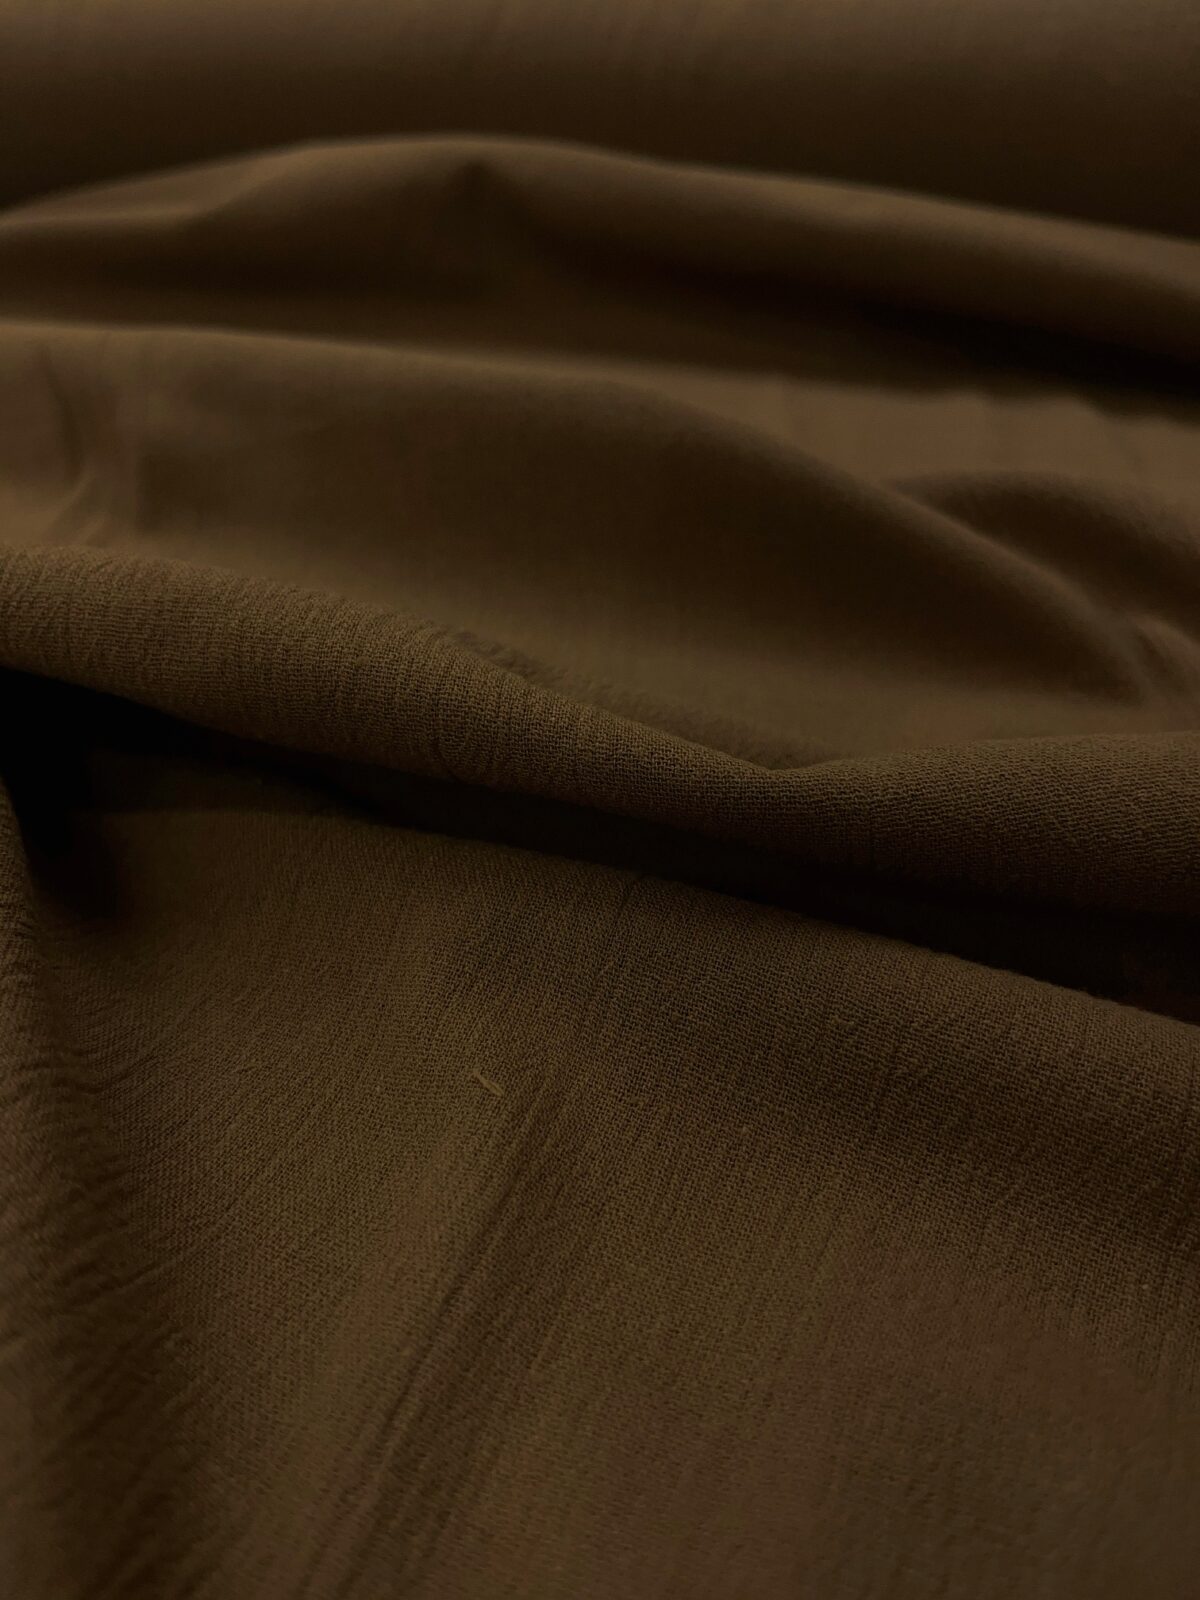 birlik1952 şile bezi buldan fabric naturel whosale kumaş rize pamuklu elbiselik elbise kumaşı koyu kahve brown